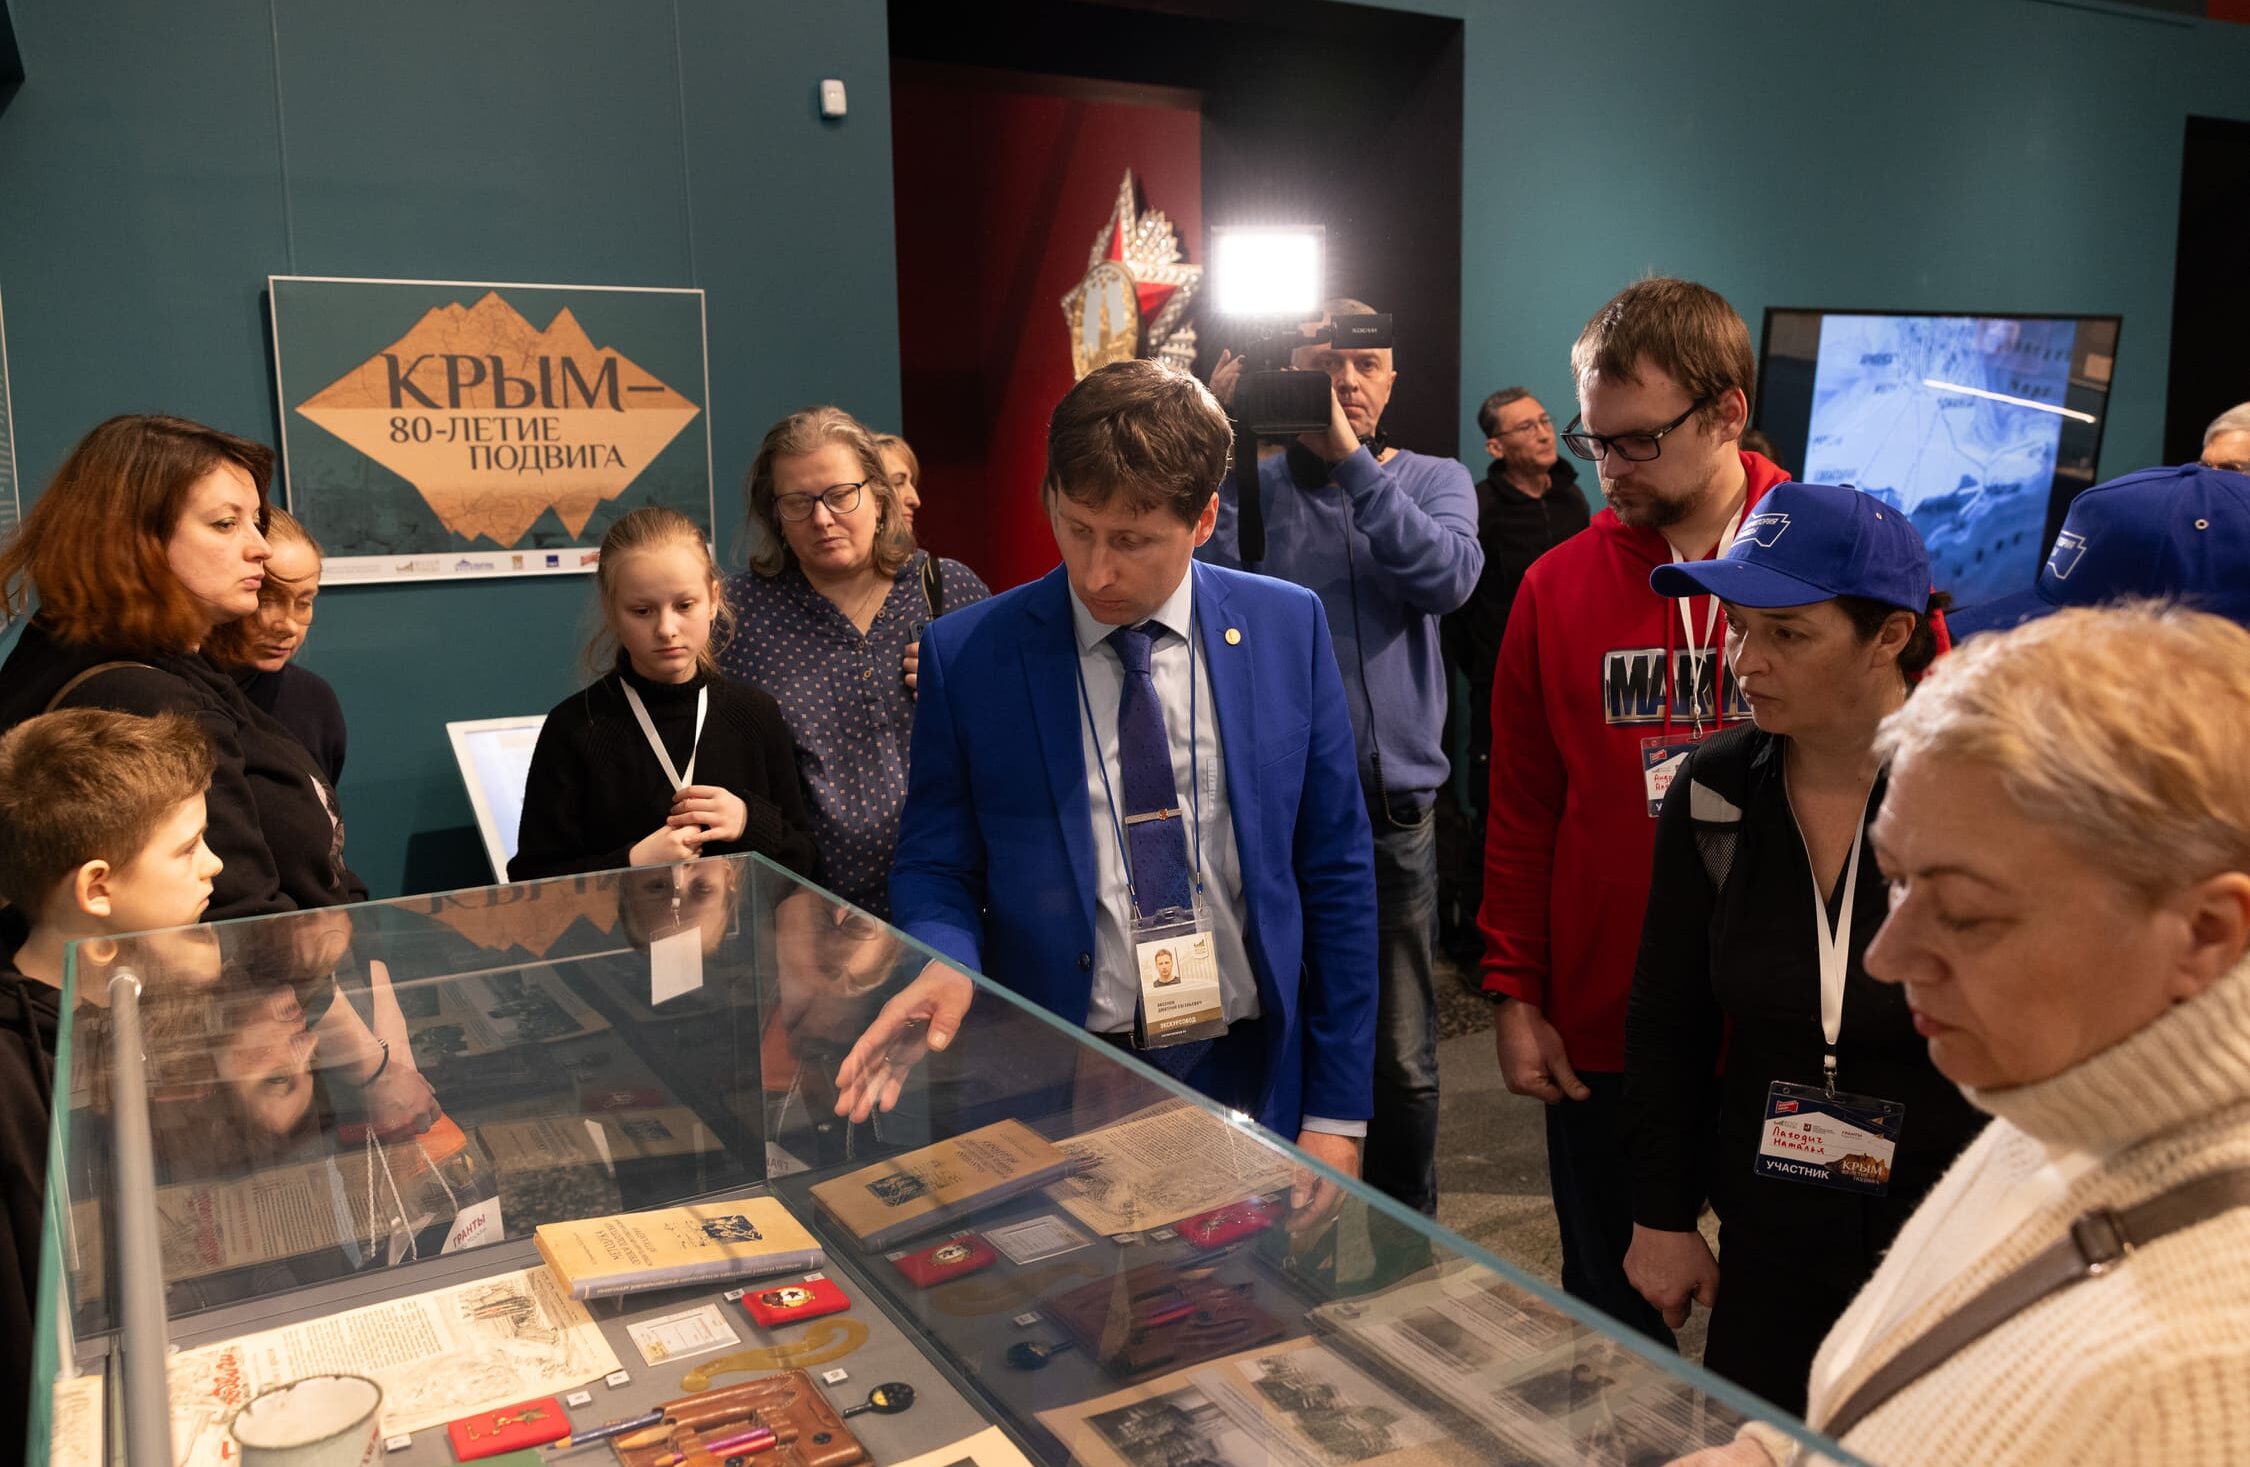 Музей рассказал историю освобождения Крыма